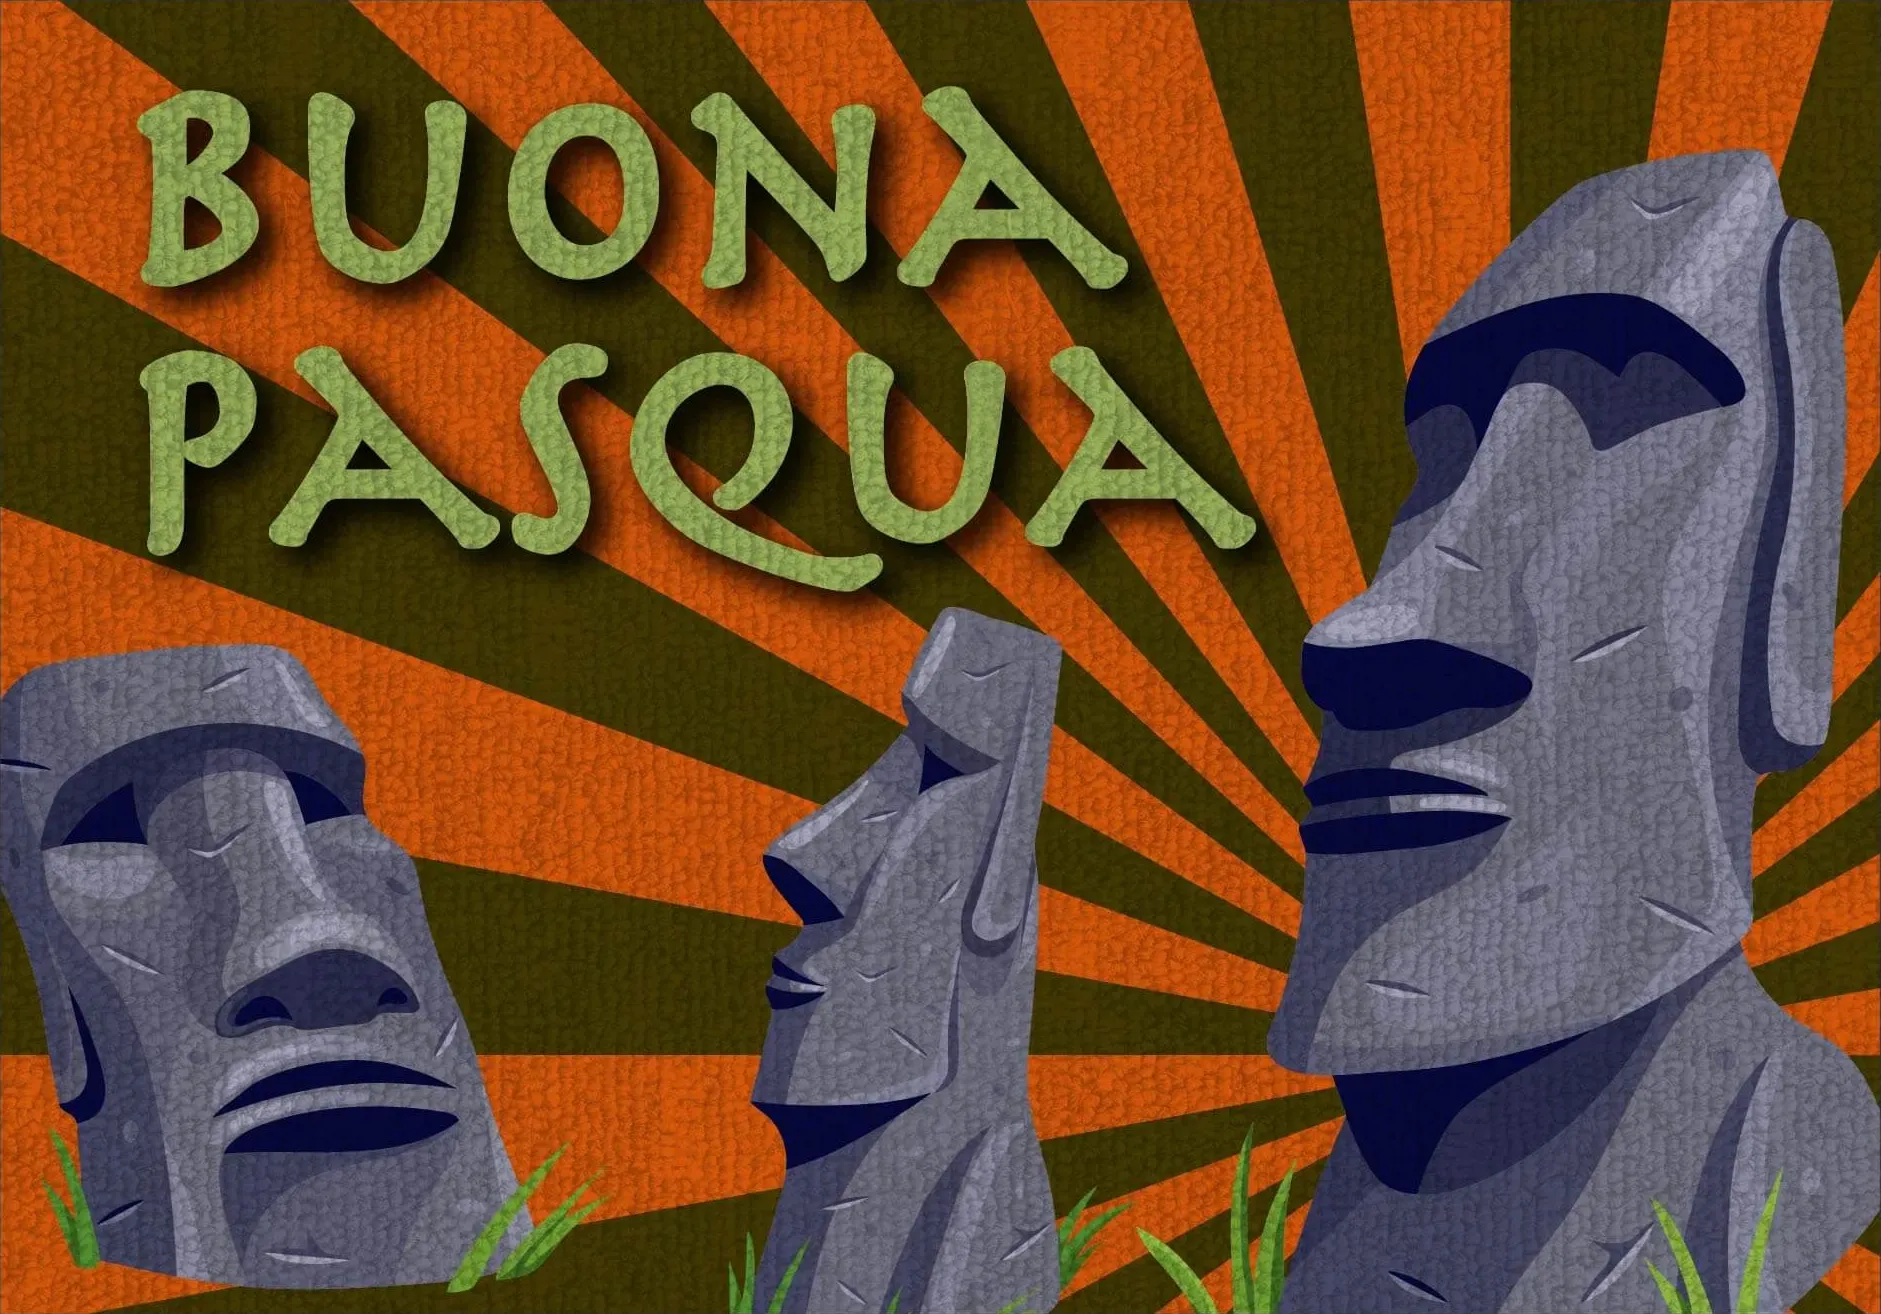 Buona pasqua - limited edition